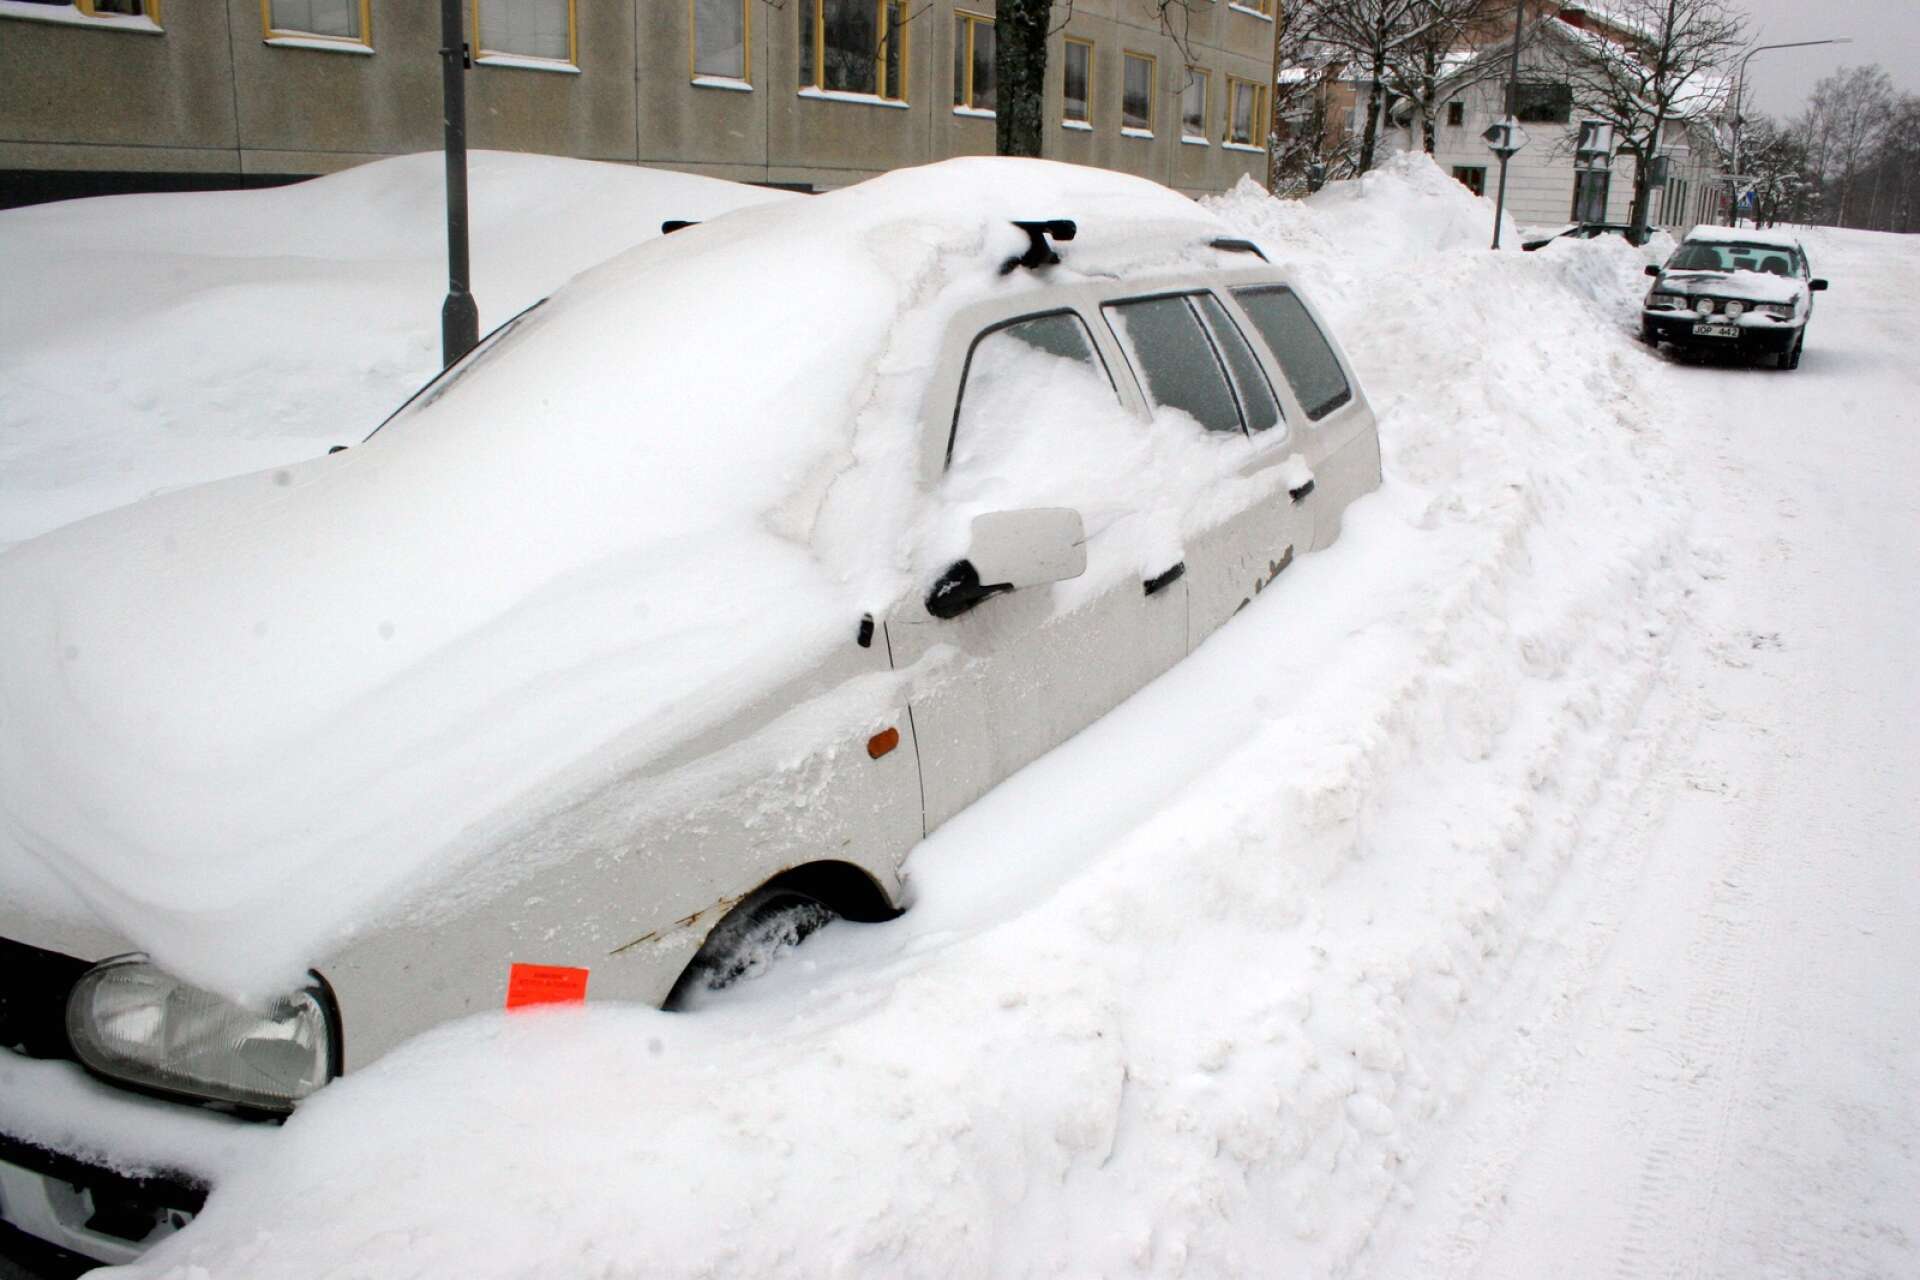 Varför får felparkerade bilar inte böter vintertid, undrar insändarskribenten.